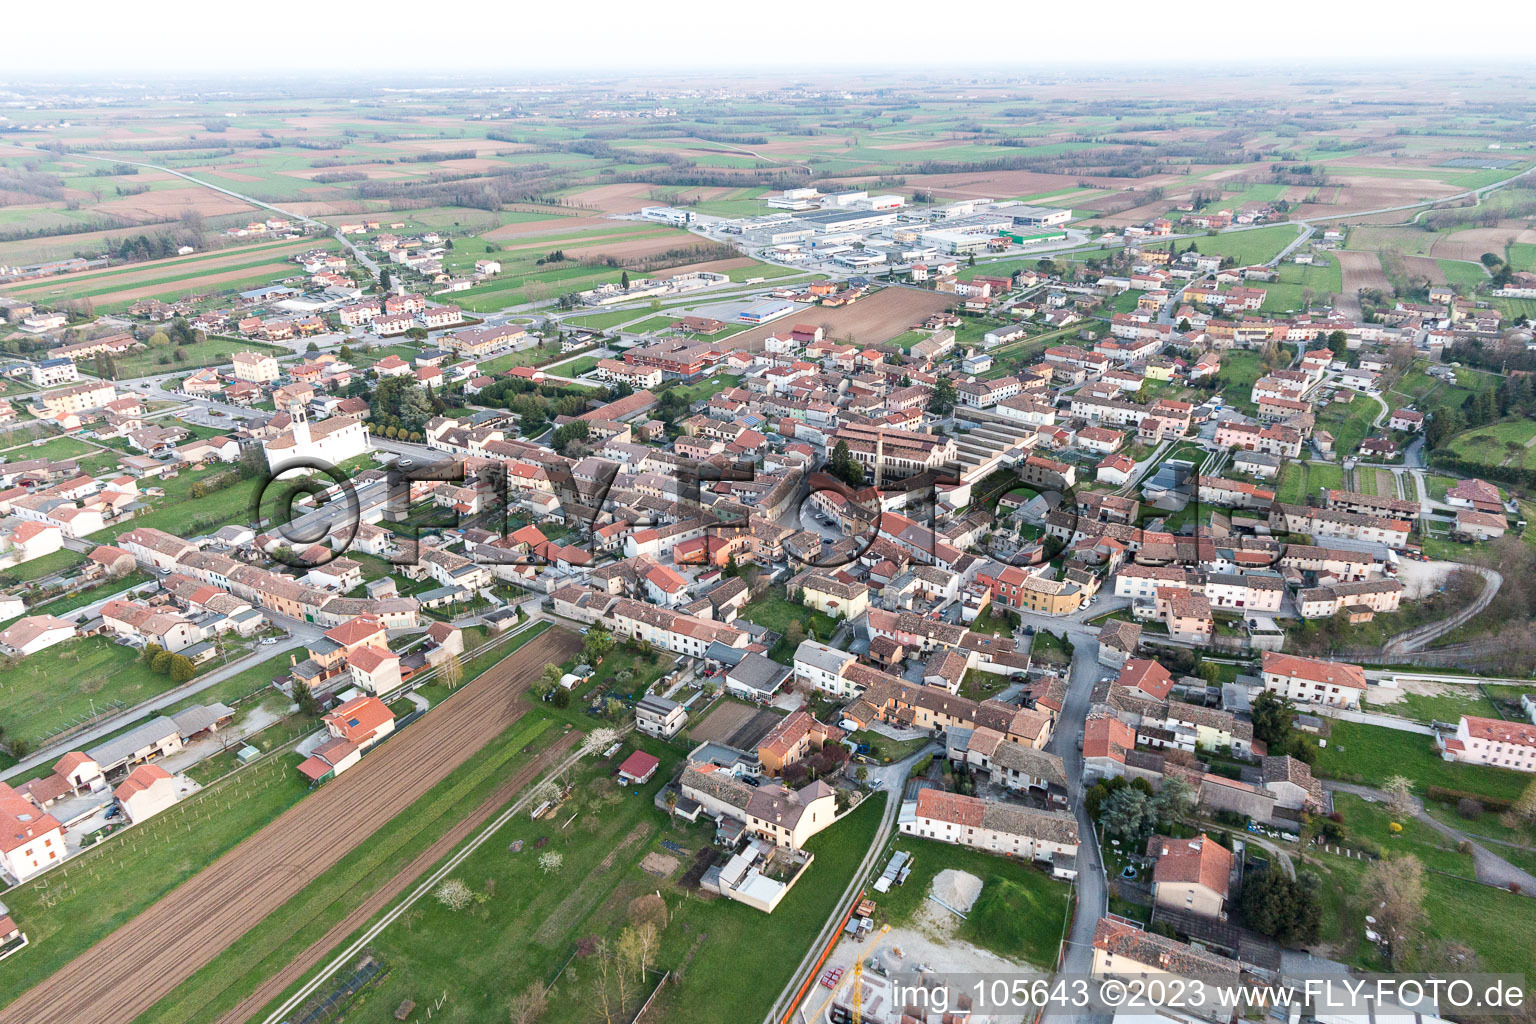 Carpacco im Bundesland Friaul-Julisch Venetien, Italien aus der Luft betrachtet